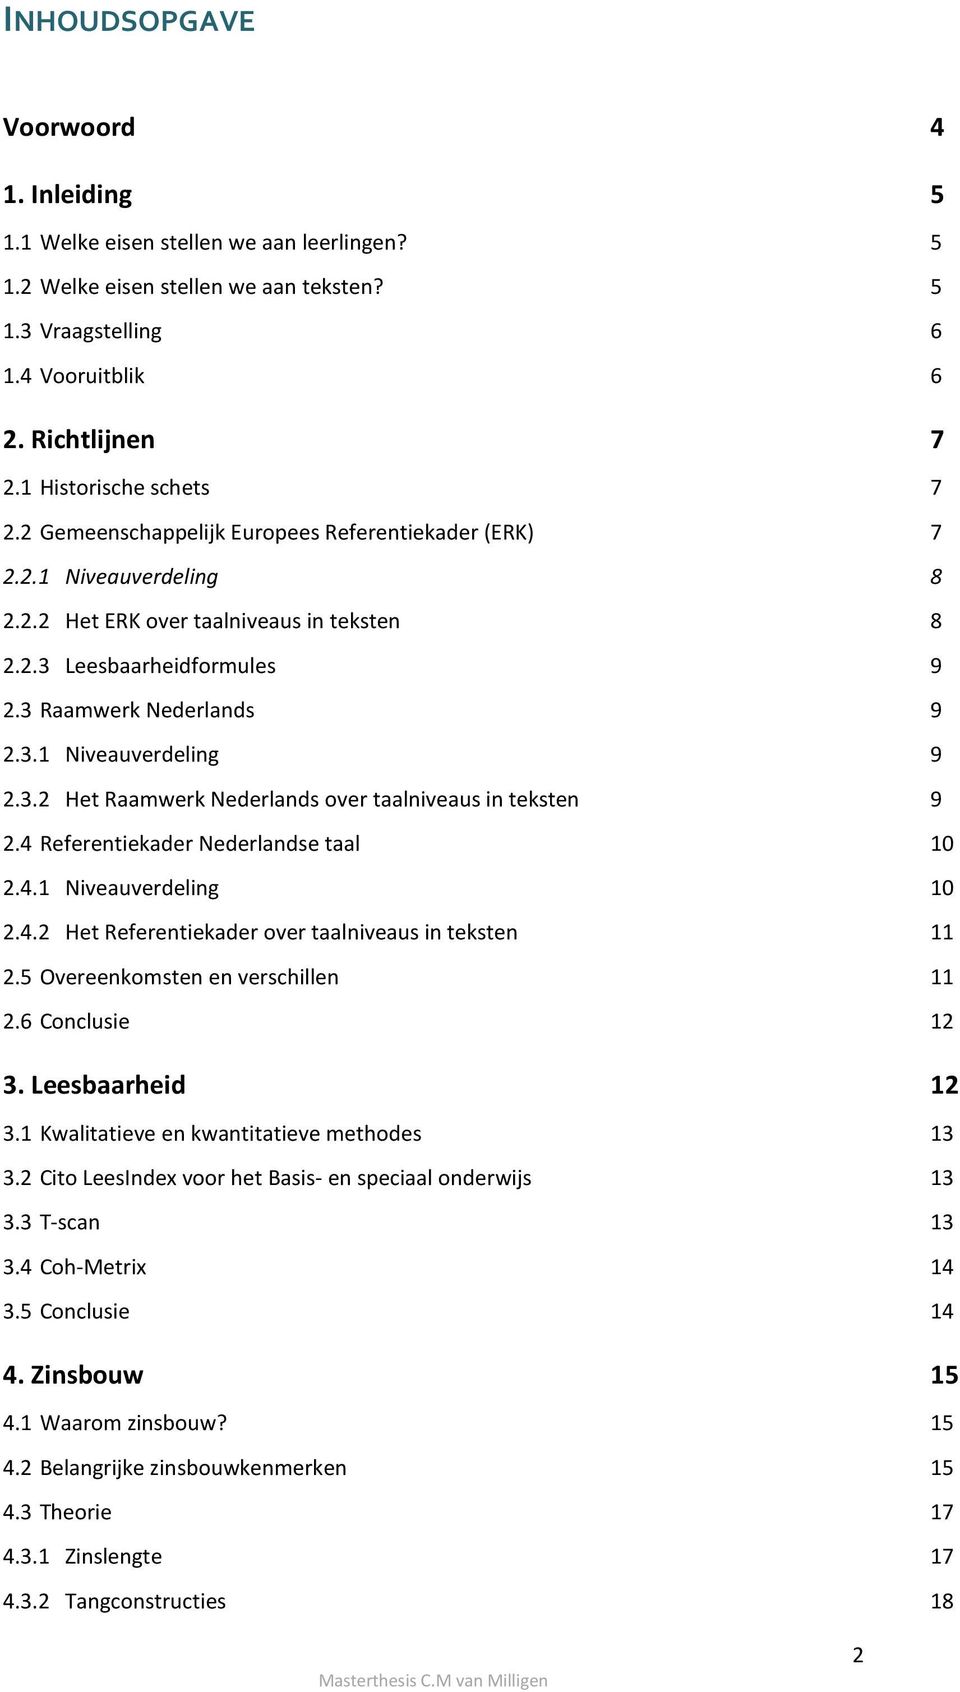 3 Raamwerk Nederlands 9 2.3.1 Niveauverdeling 9 2.3.2 Het Raamwerk Nederlands over taalniveaus in teksten 9 2.4 Referentiekader Nederlandse taal 10 2.4.1 Niveauverdeling 10 2.4.2 Het Referentiekader over taalniveaus in teksten 11 2.